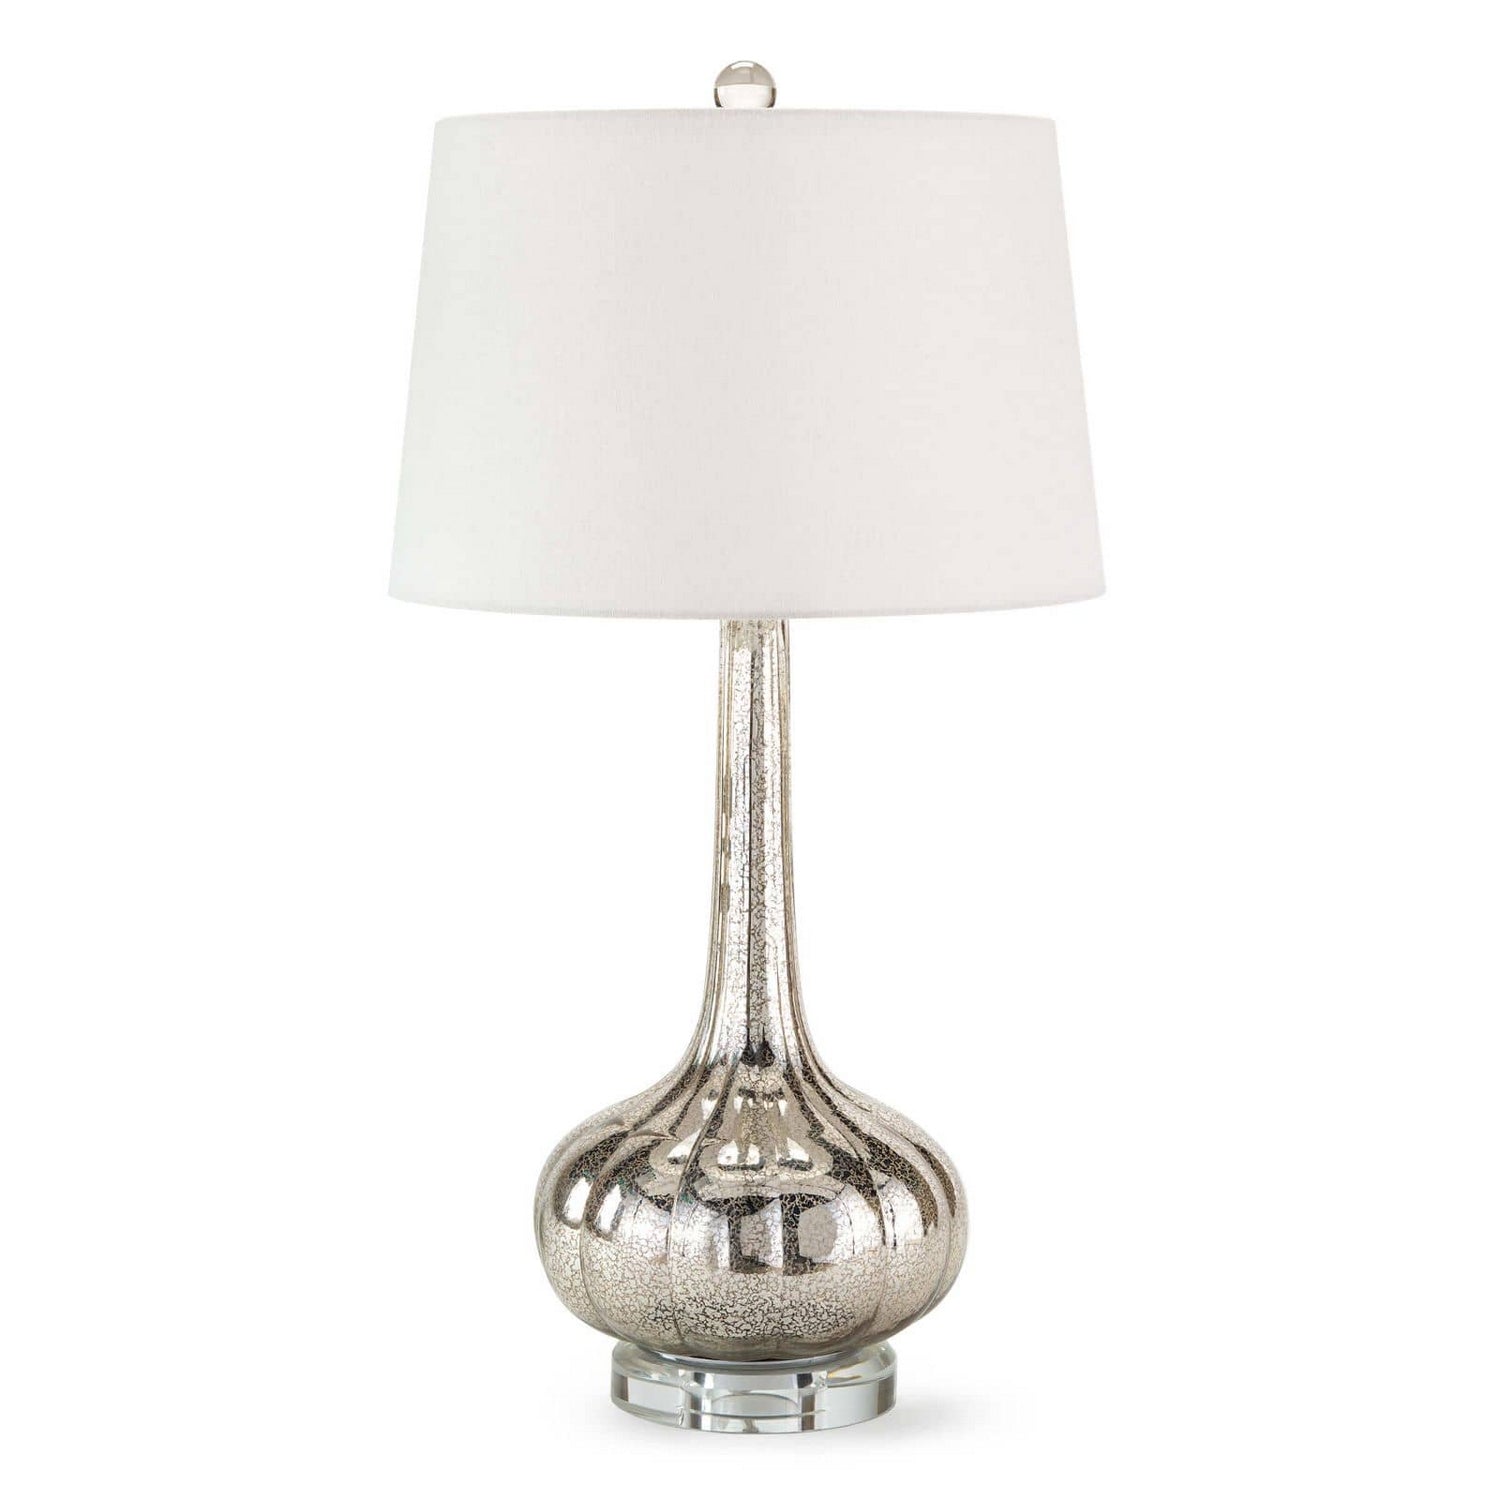 Regina Andrew - 13-1043AM - One Light Table Lamp - Milano - Antique Mercury